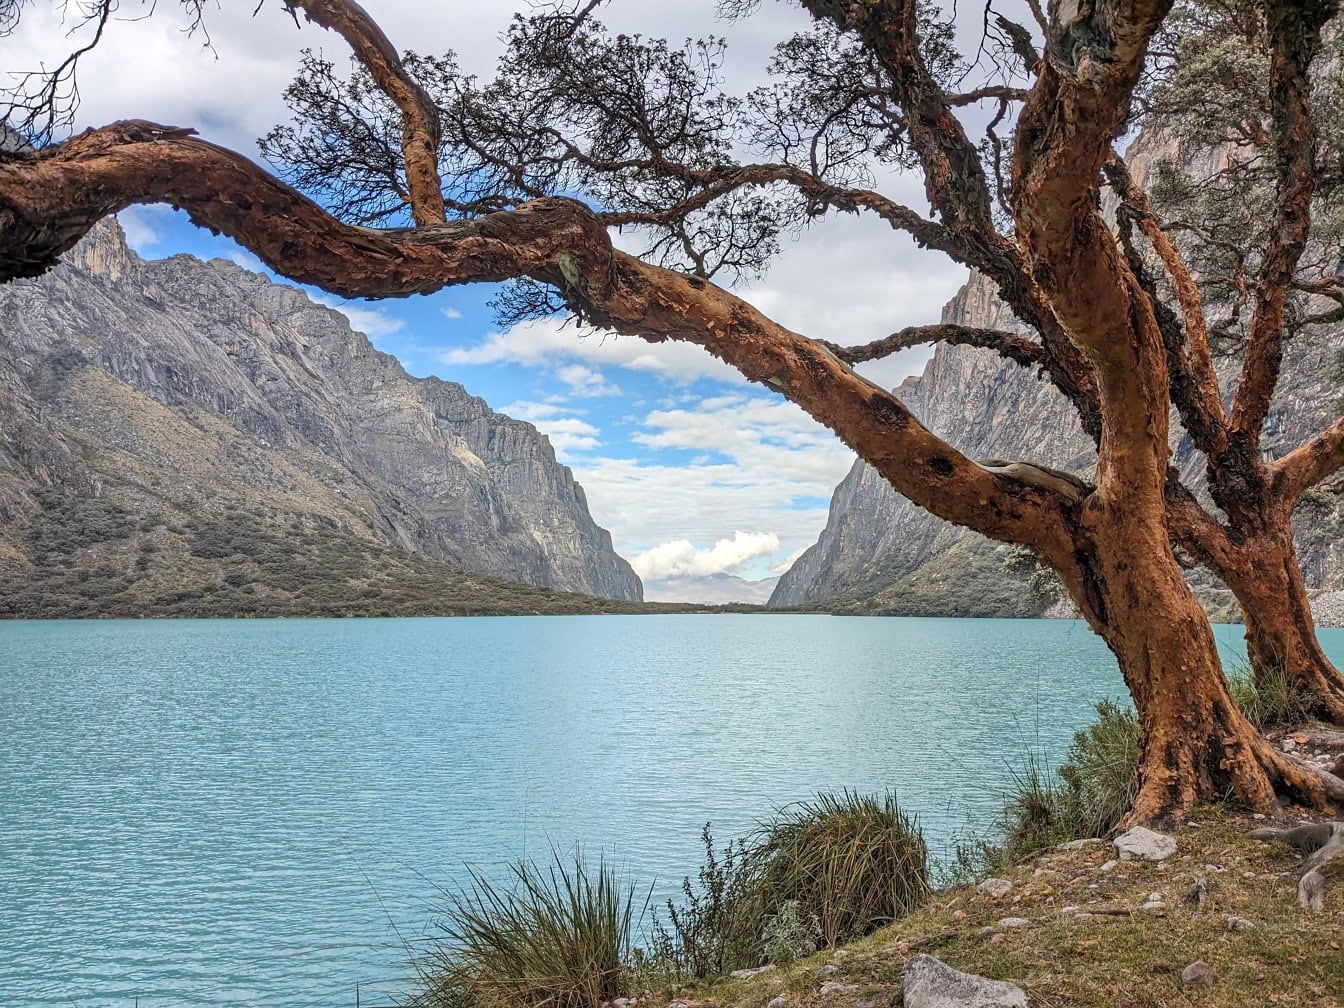 Peru’nun And Dağları’ndaki Cordillera Blanca yakınlarındaki bir doğal parkta Llanganuco gölünün kıyısındaki ağaçlar